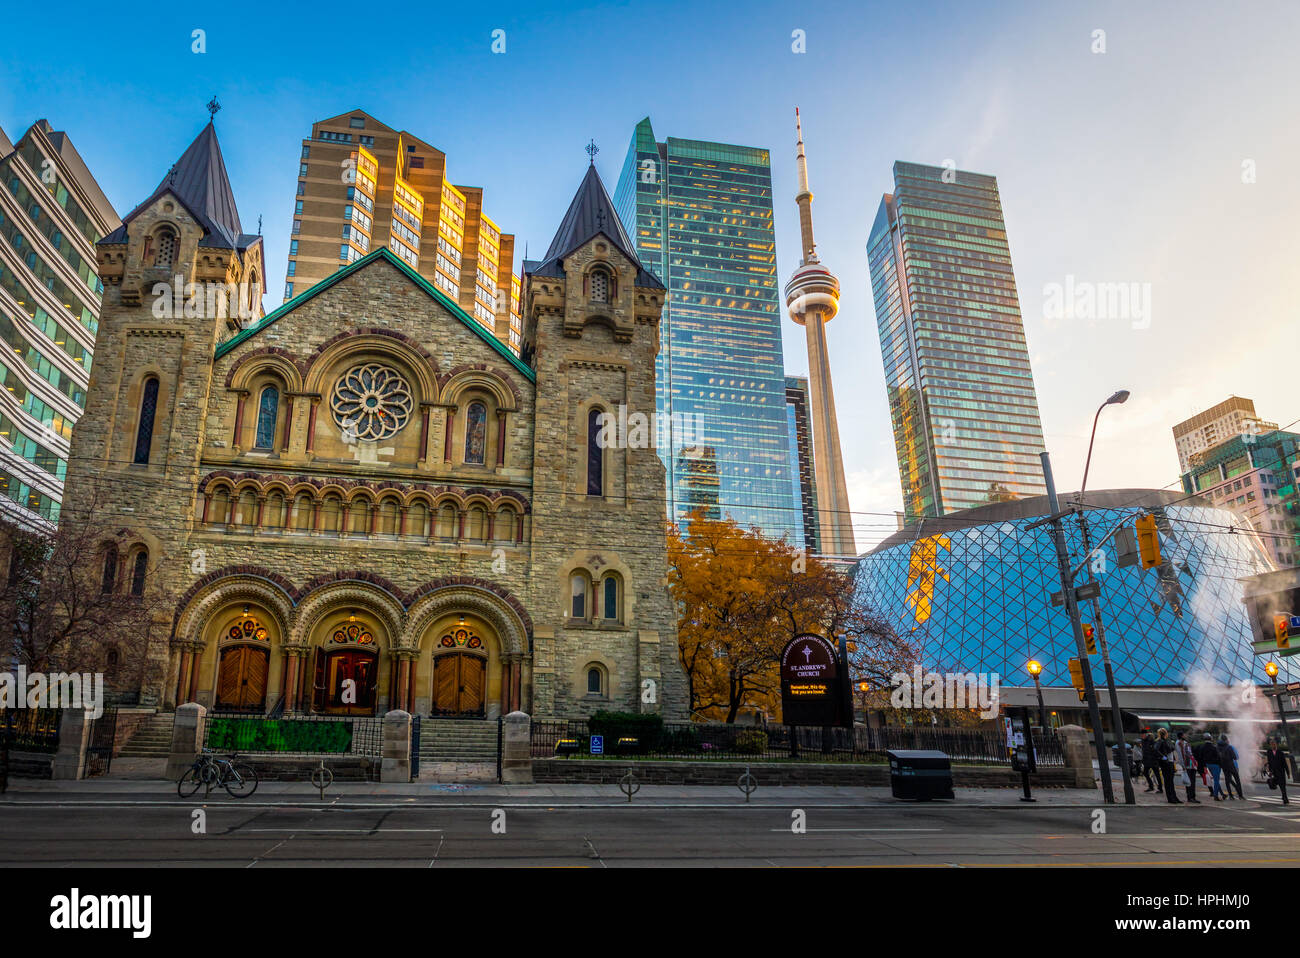 Vue panoramique de l'église presbytérienne Saint Andrew's et de la Tour CN - Toronto, Ontario, Canada Banque D'Images